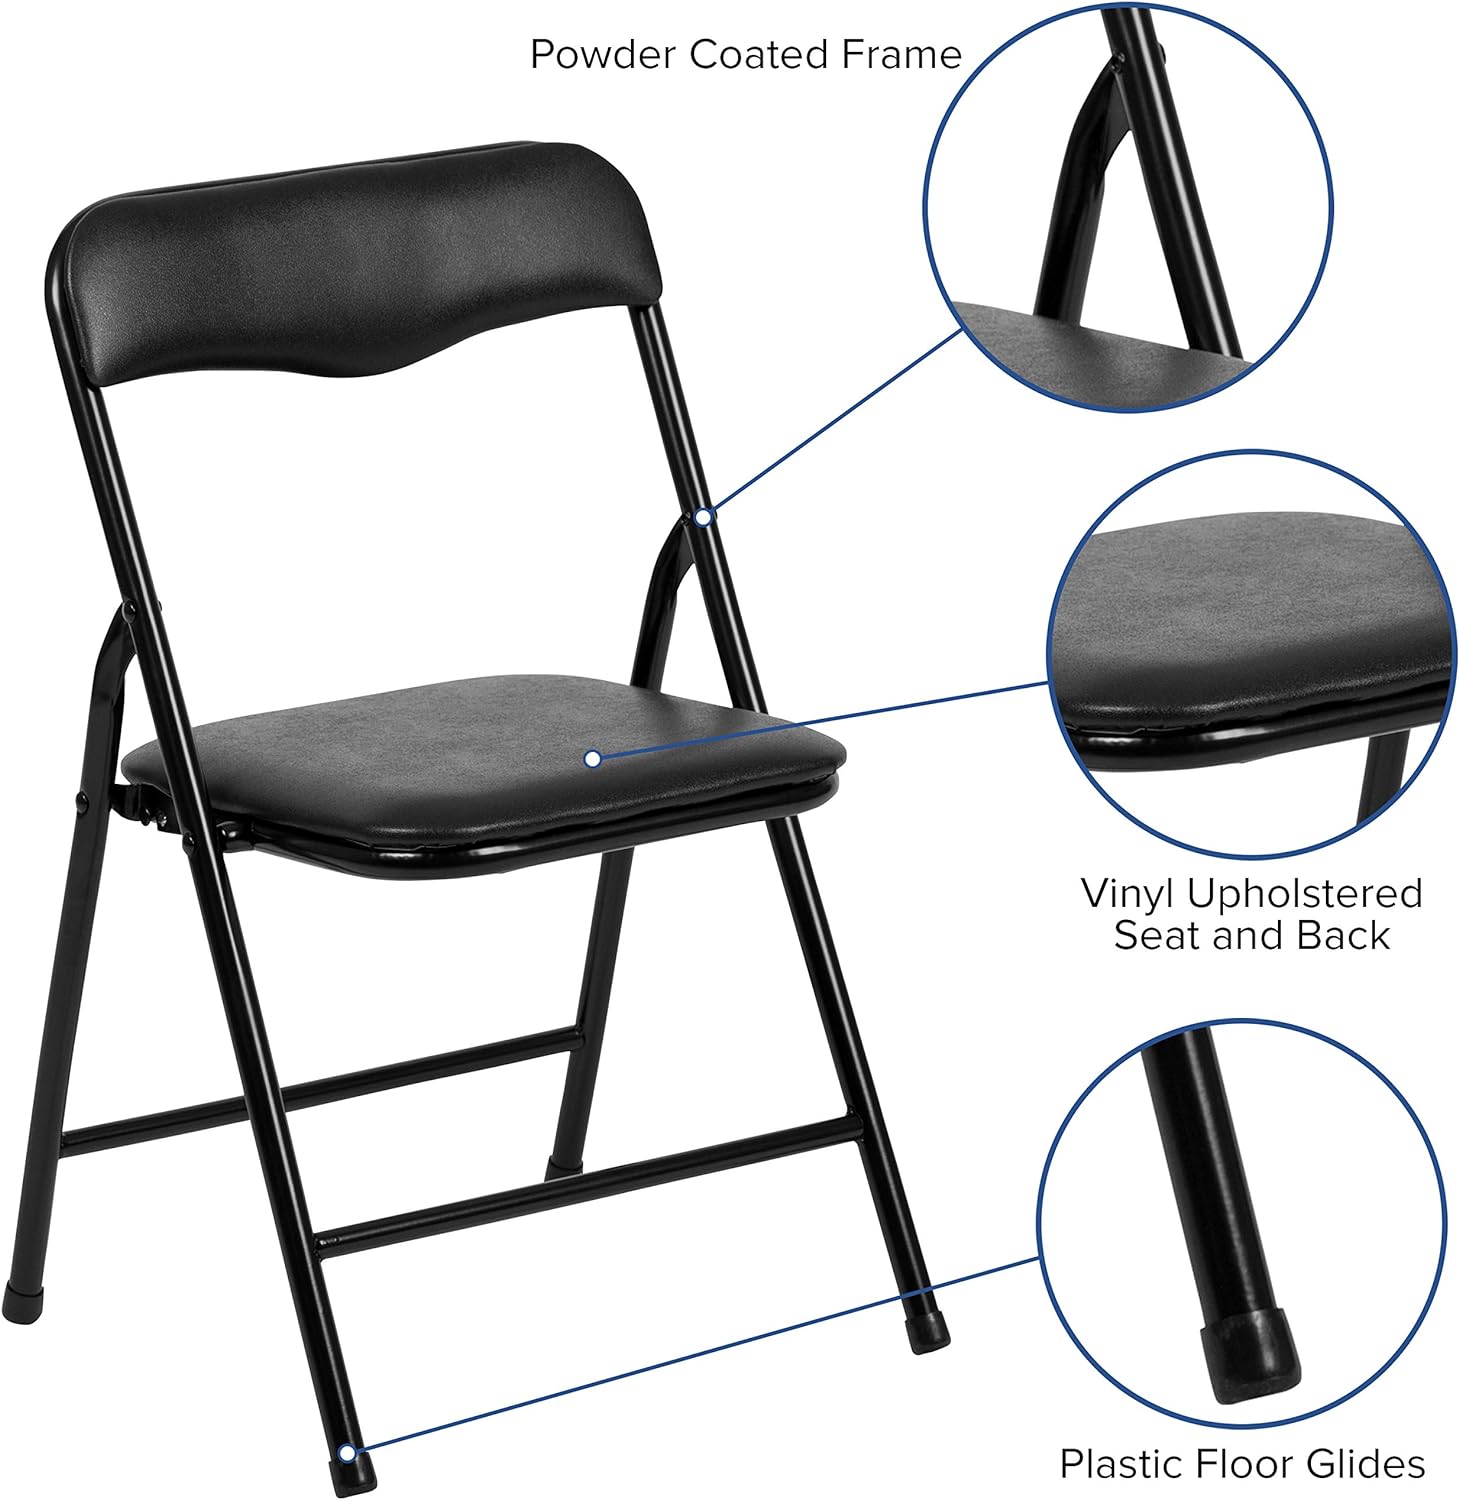 Juego de mesa y silla plegable de 5 piezas para niños, color negro